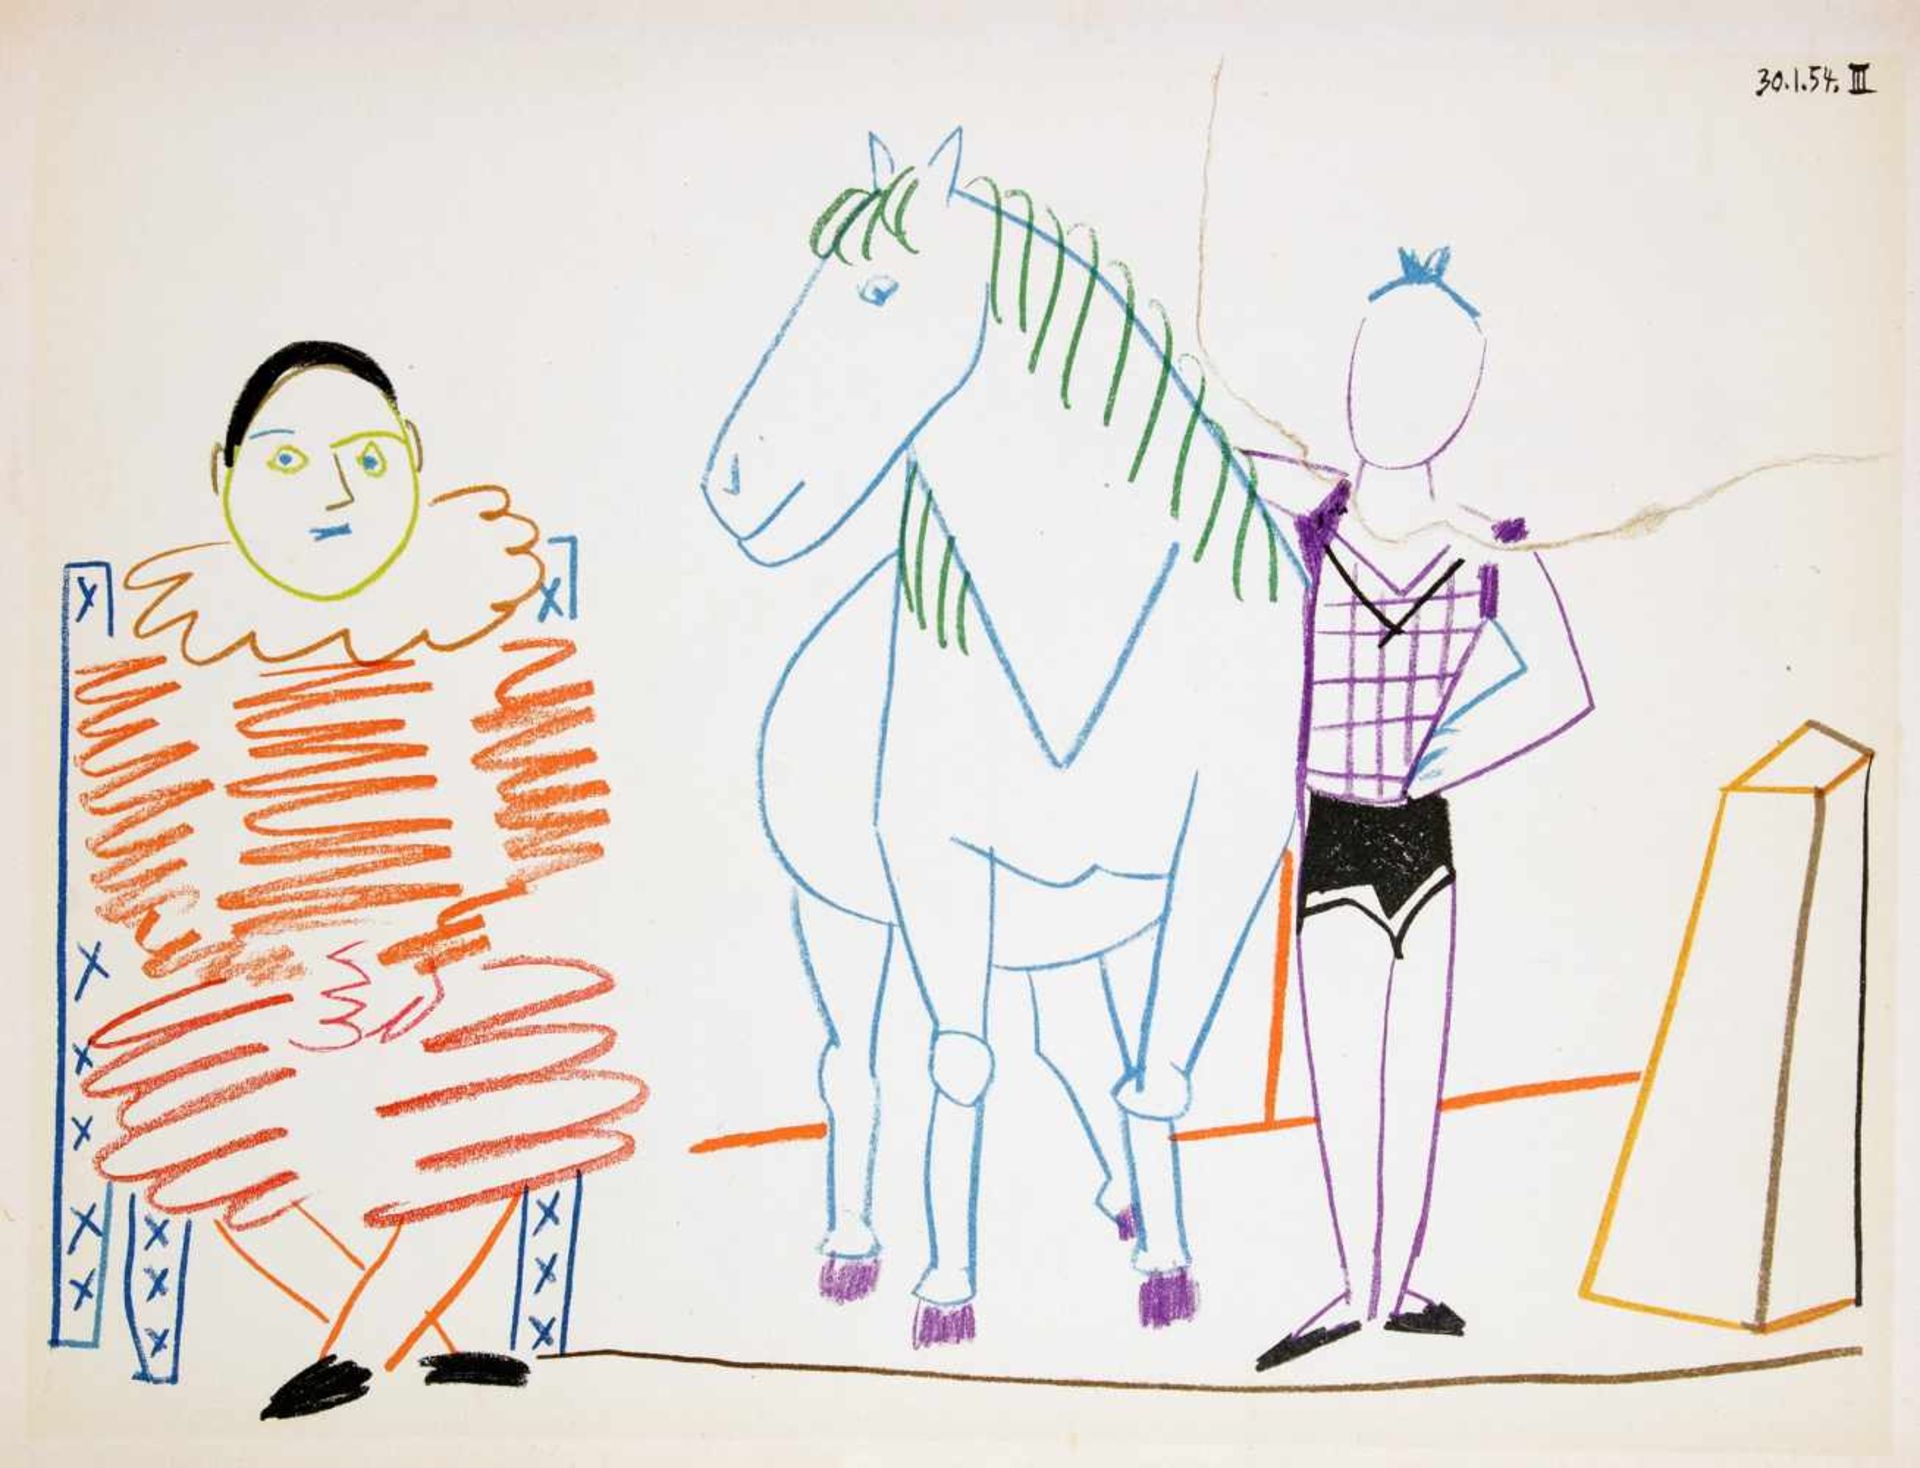 Pablo Picasso. Suite de 180 dessins. Paris 1954. Mit 13 Farblithographien, davon eine als